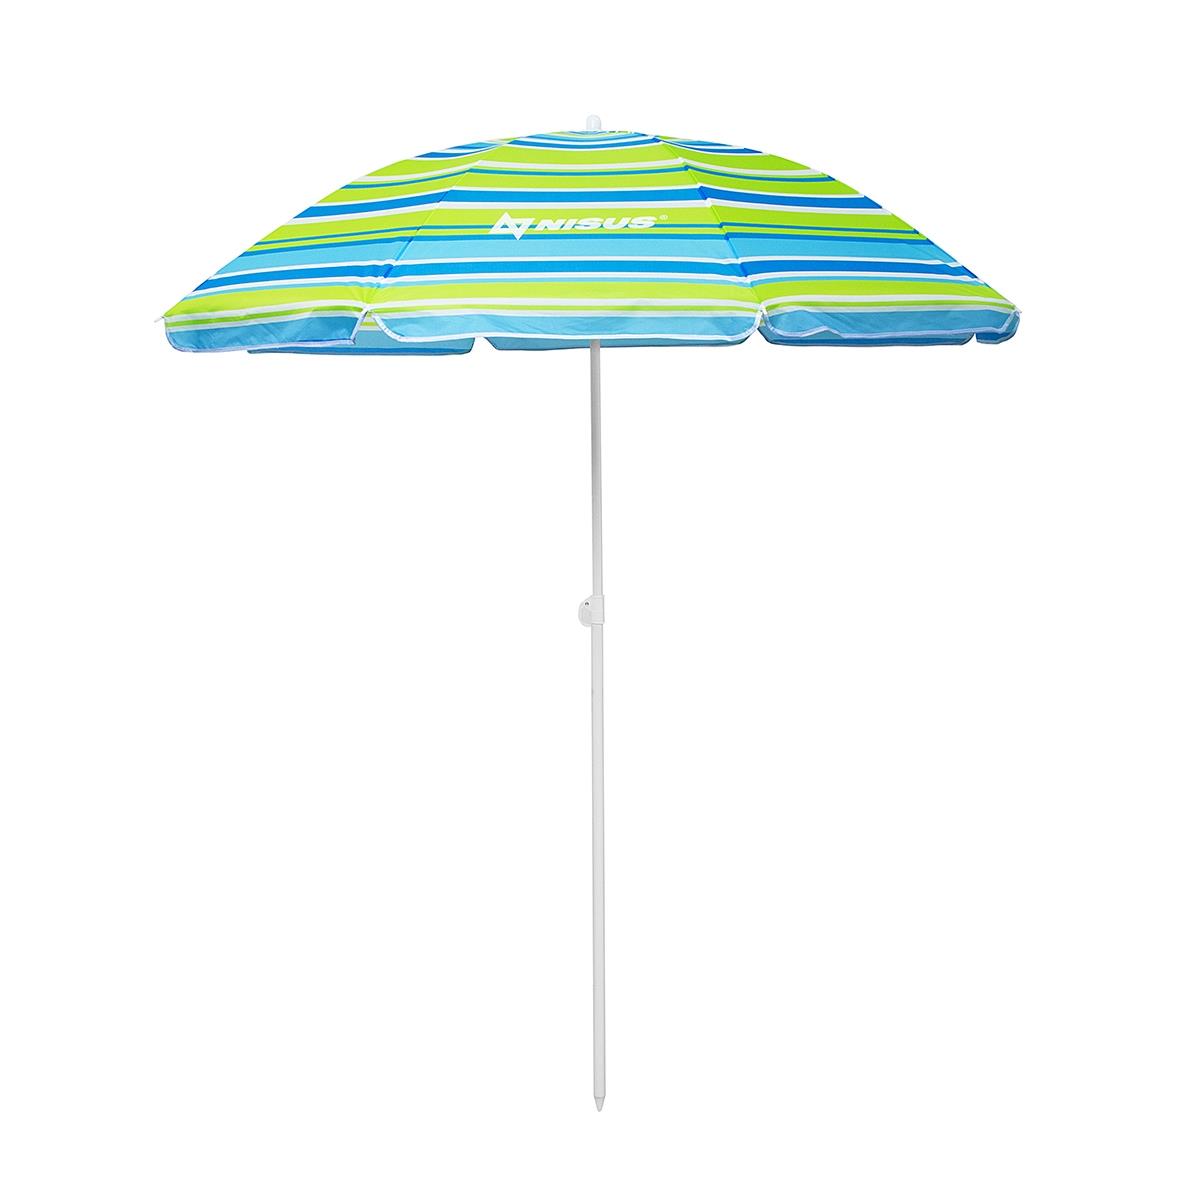 Зонт пляжный d 2,00м прямой (22/25/170Т) NA-200-SB  Nisus зонт пляжный d 2 00м с наклоном голубой 22 25 170т na 200n b nisus